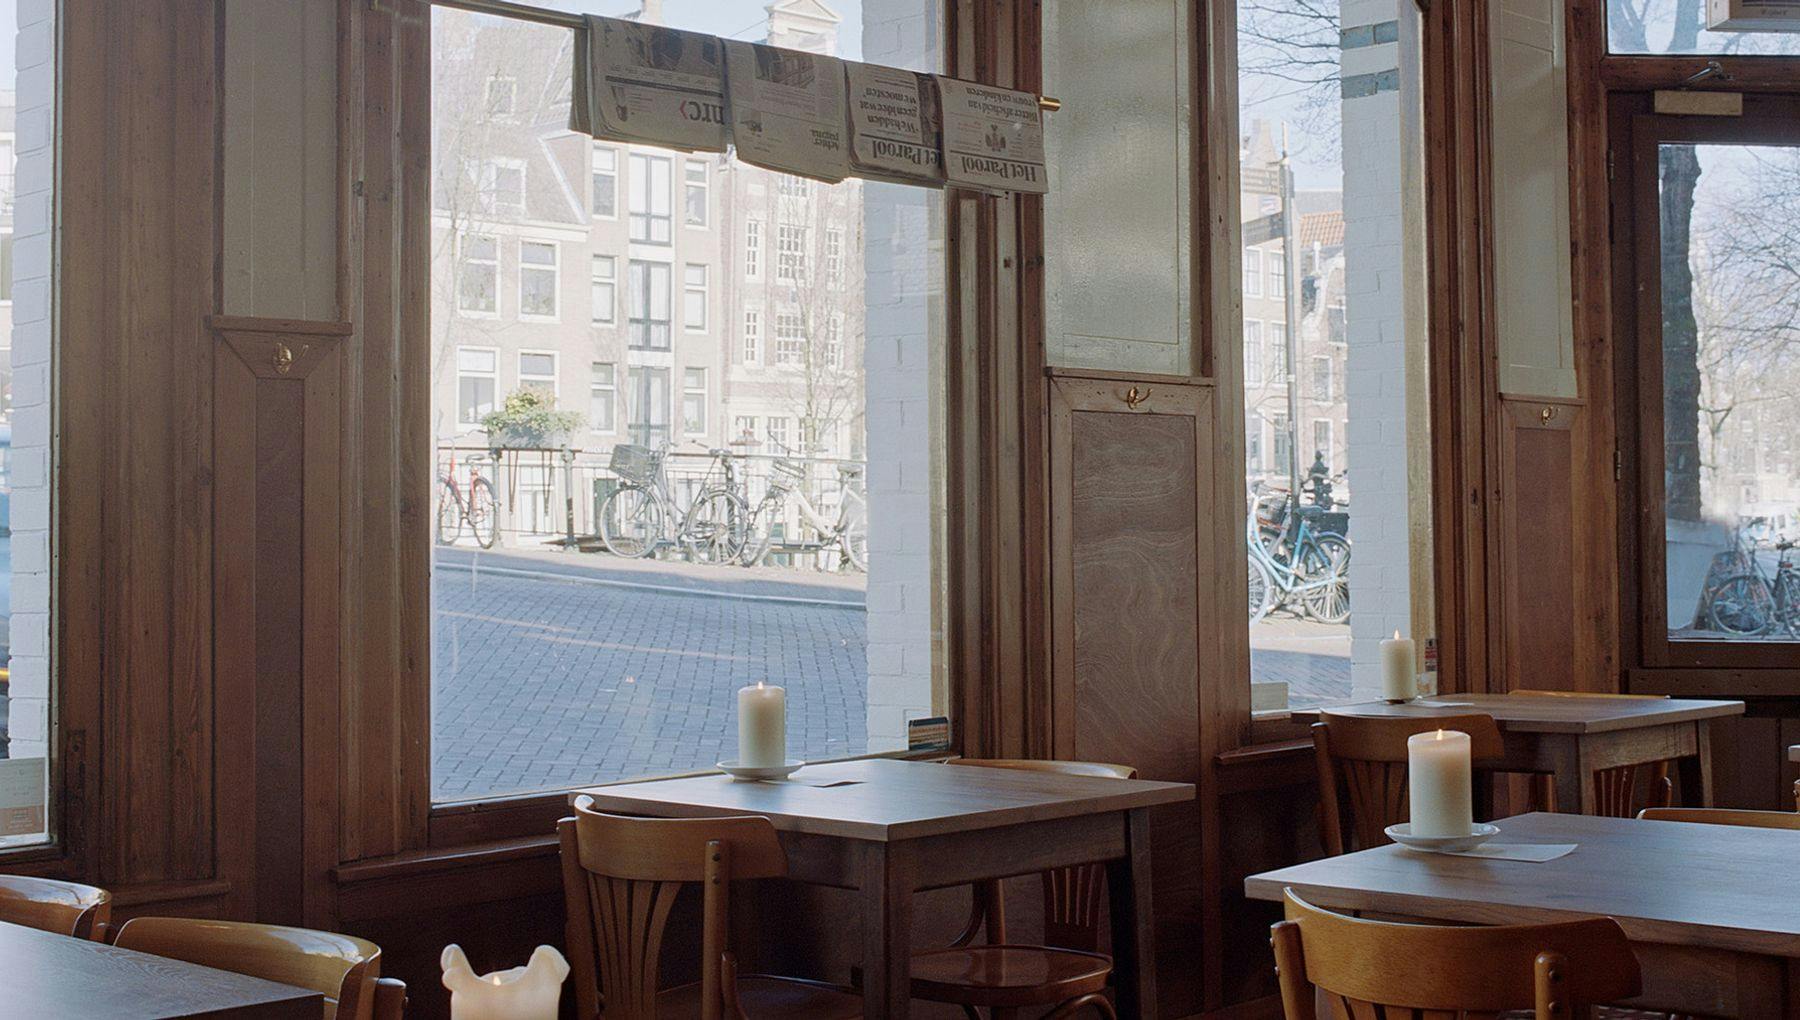 Café Twee Prinsen interior